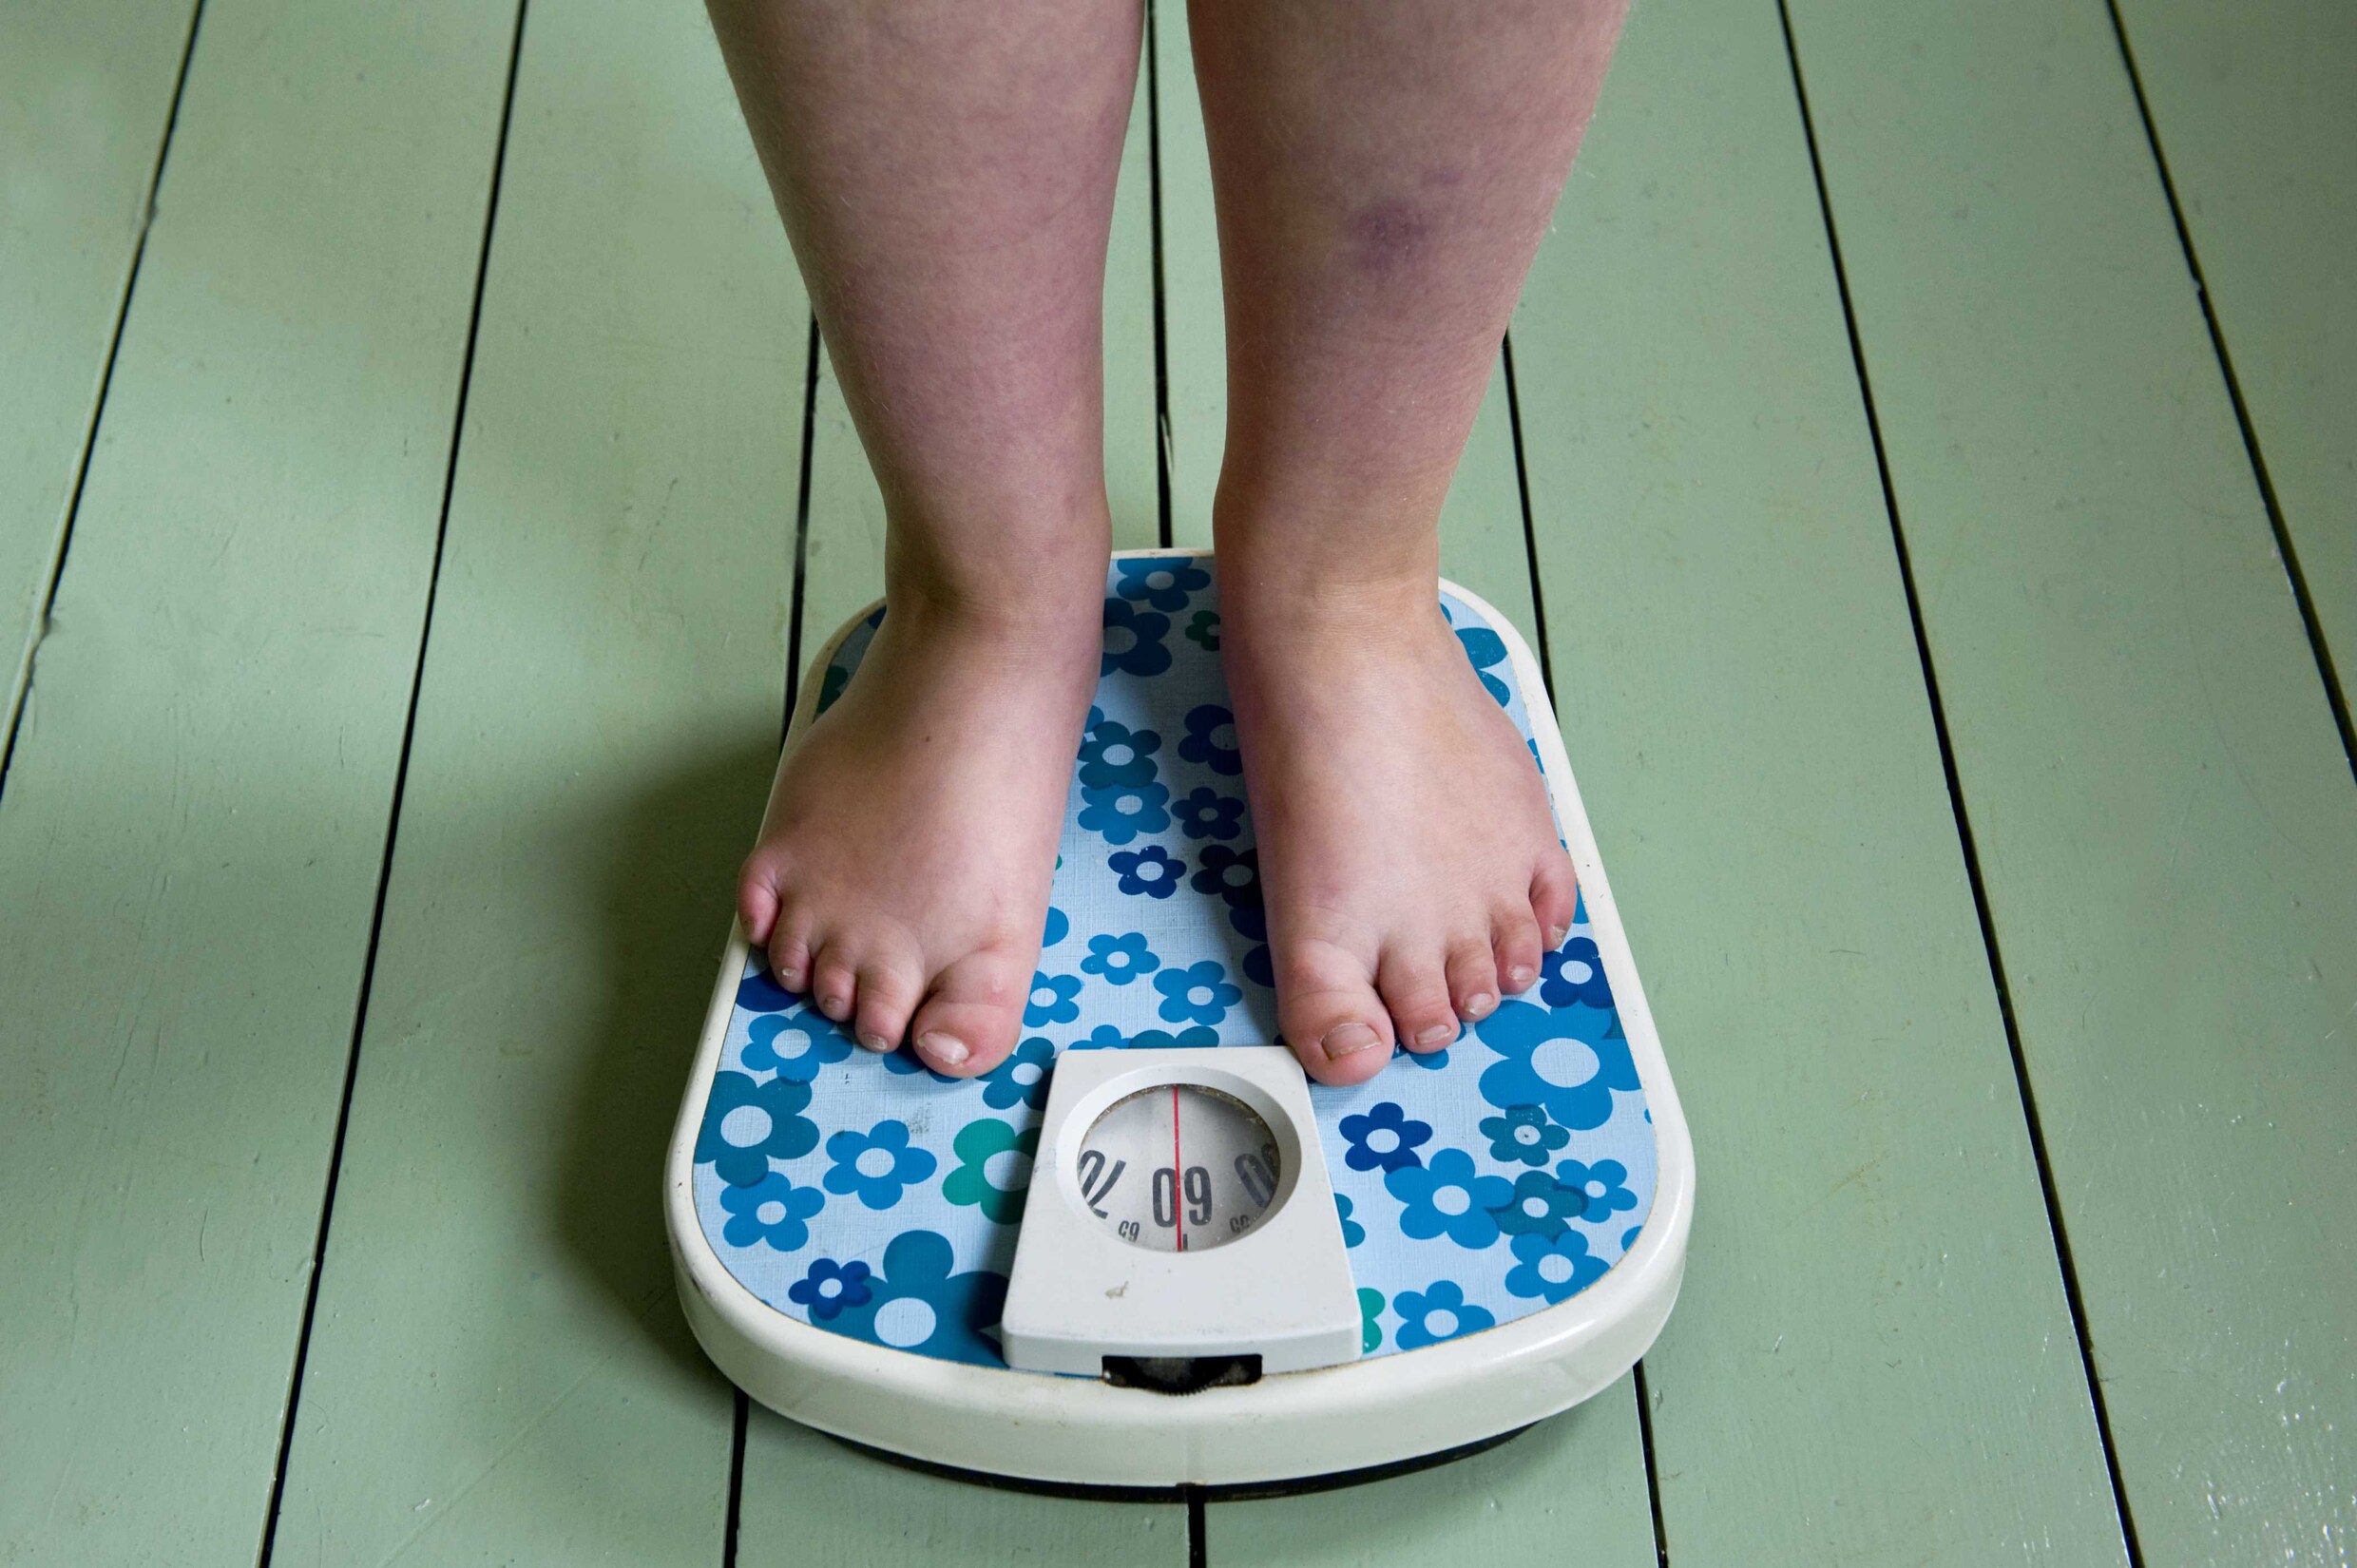 Ongezonde levensstijl allerjongsten baart zorgen: "Kinderen met obesitas sterven vroege dood"